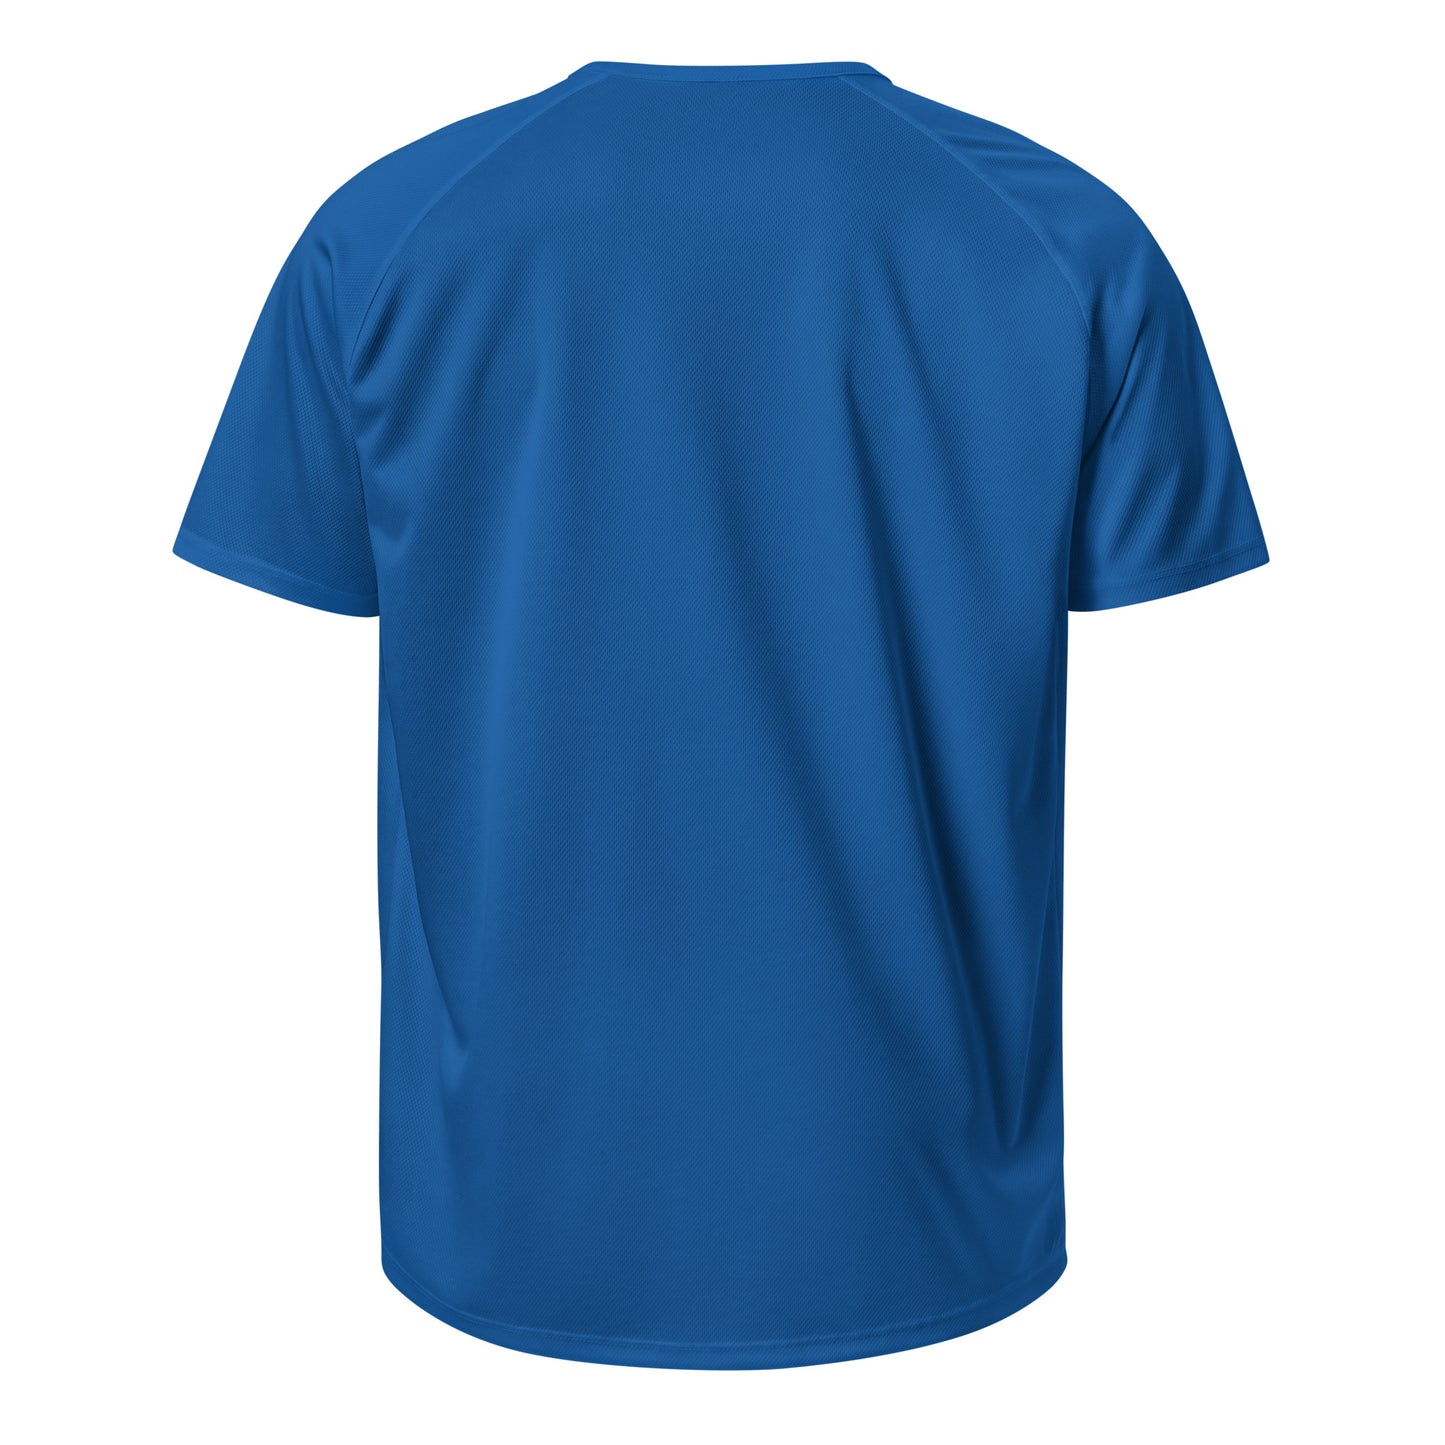 E113 - Thể thao/Vải thoáng khí (Nhảy phổ quát : Màu xanh da trời)